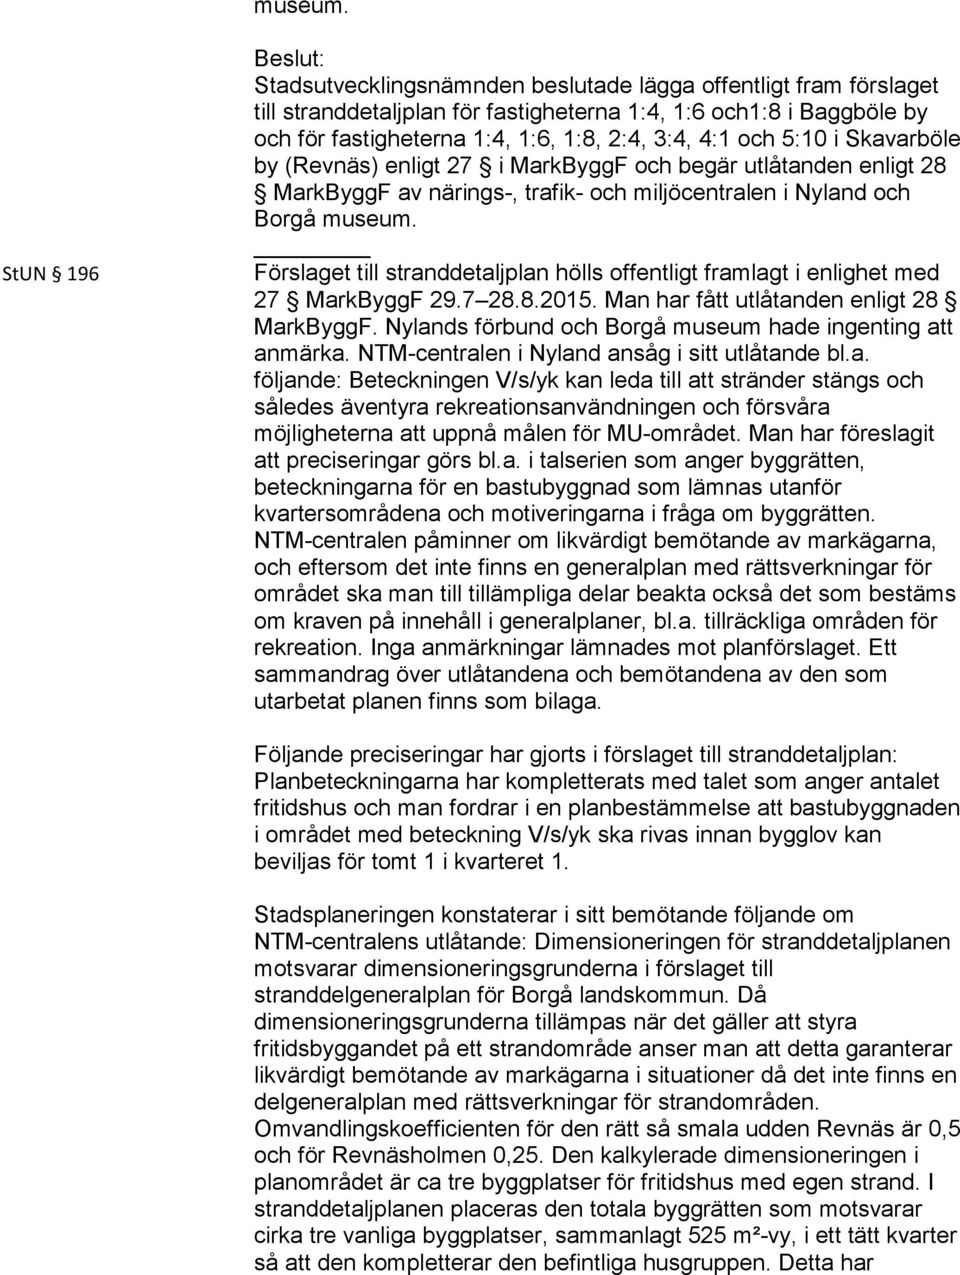 5:10 i Skavarböle by (Revnäs) enligt 27 i MarkByggF och begär utlåtanden enligt 28 MarkByggF av närings-, trafik- och miljöcentralen i Nyland och Borgå  Förslaget till stranddetaljplan hölls